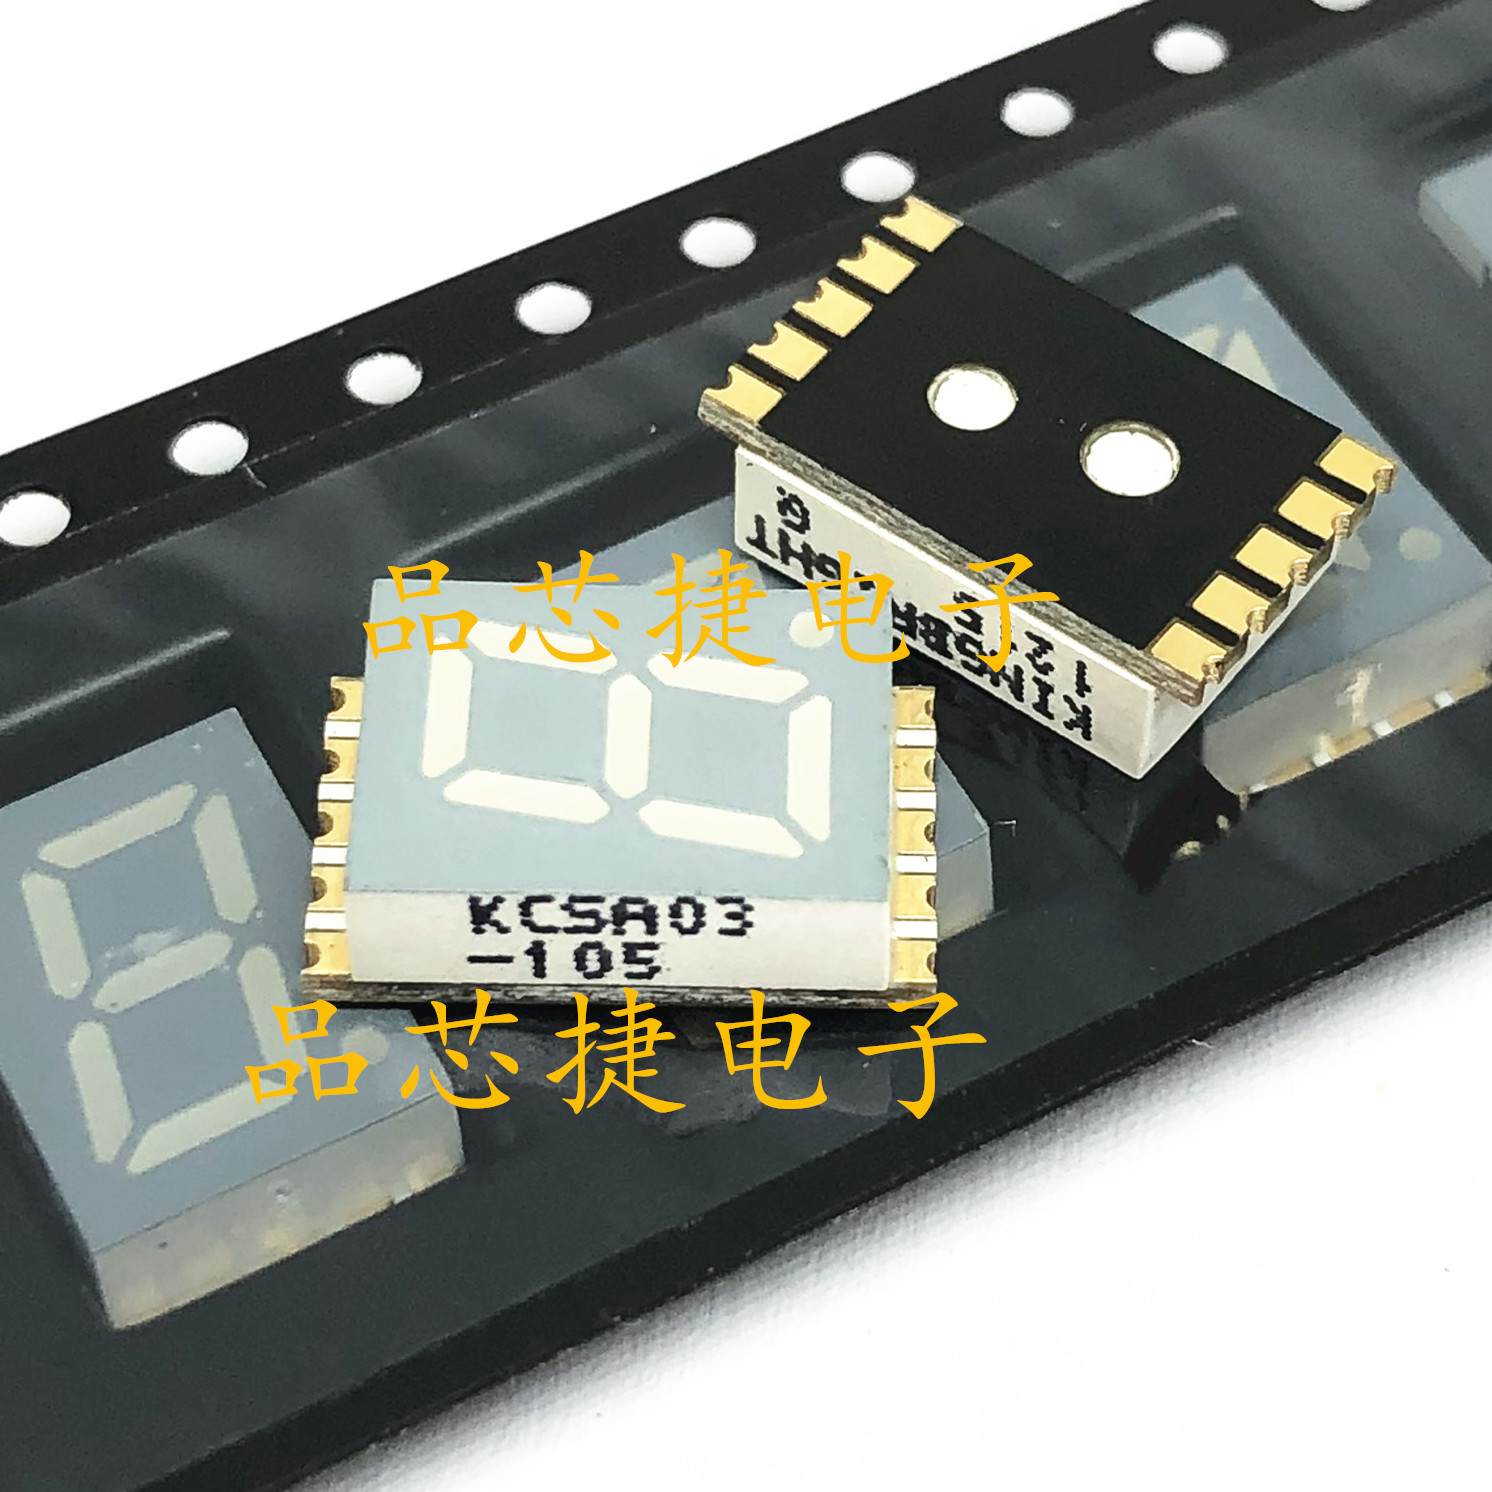 KCSA03-105 7段位 LED显示 共阳极 红色 1位 贴片数码管 全新原装